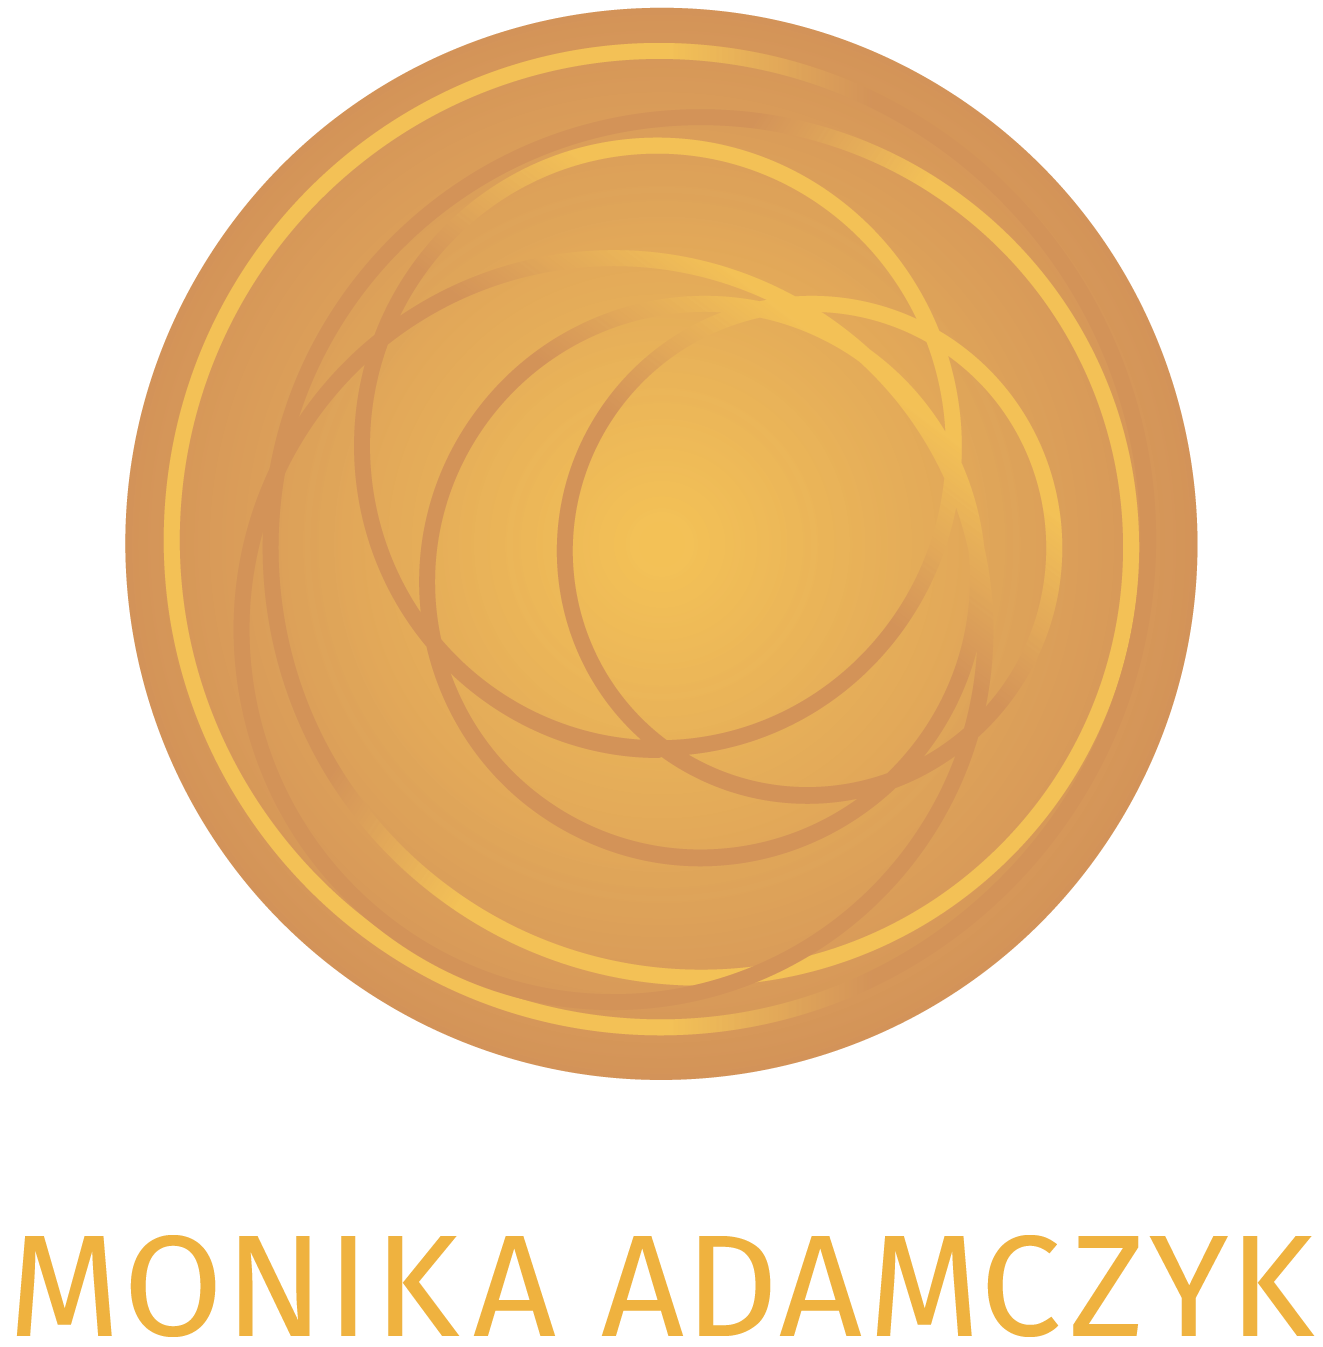 Monika Adamczyk